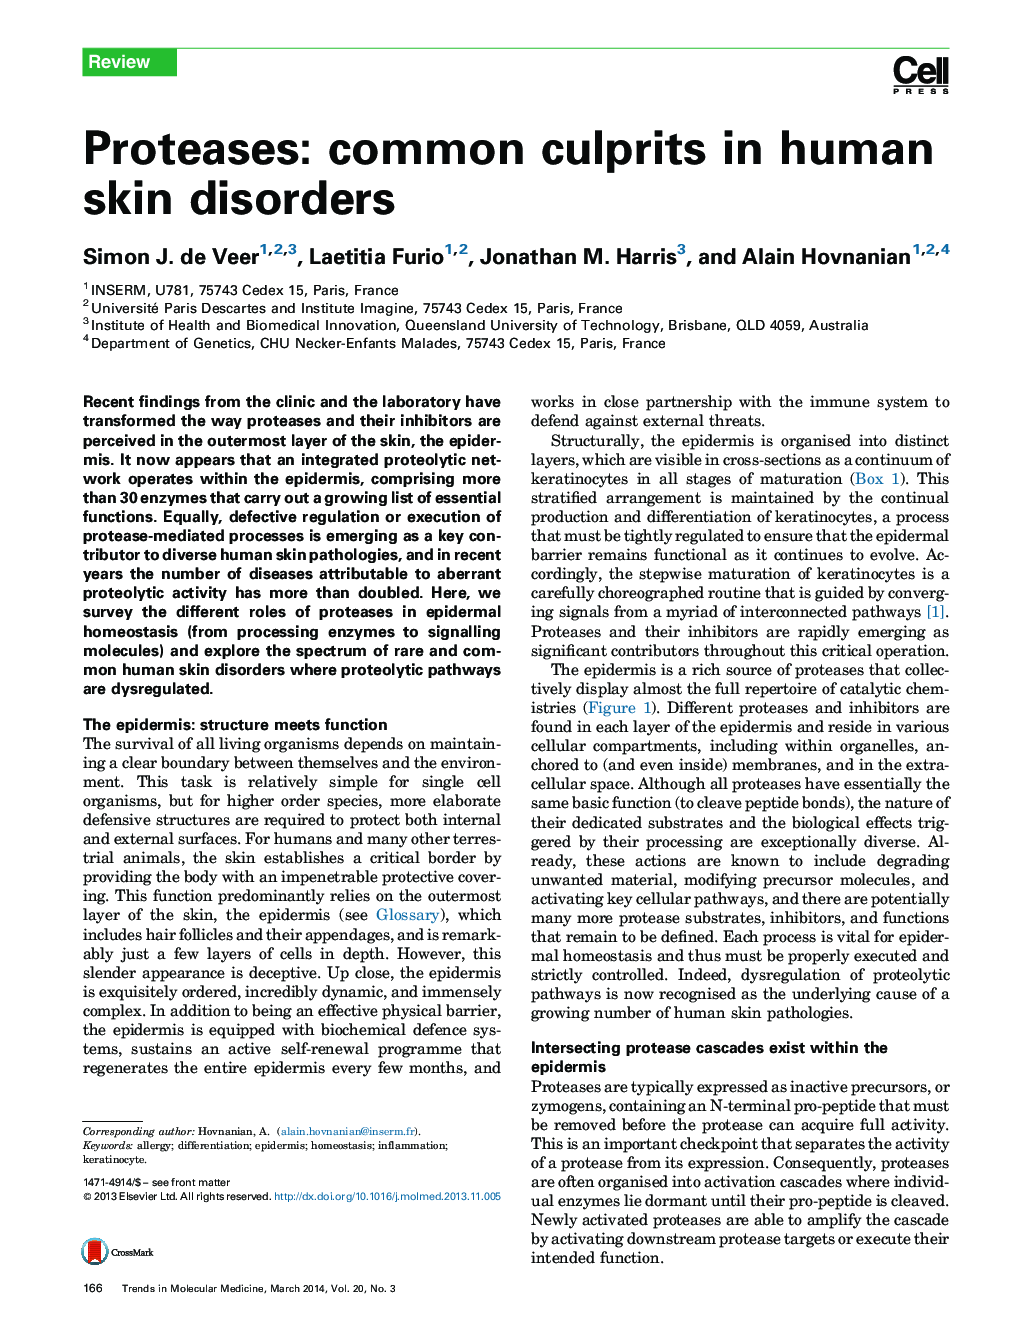 پروتئازها: متجاوزان شایع در اختلالات پوستی انسان 